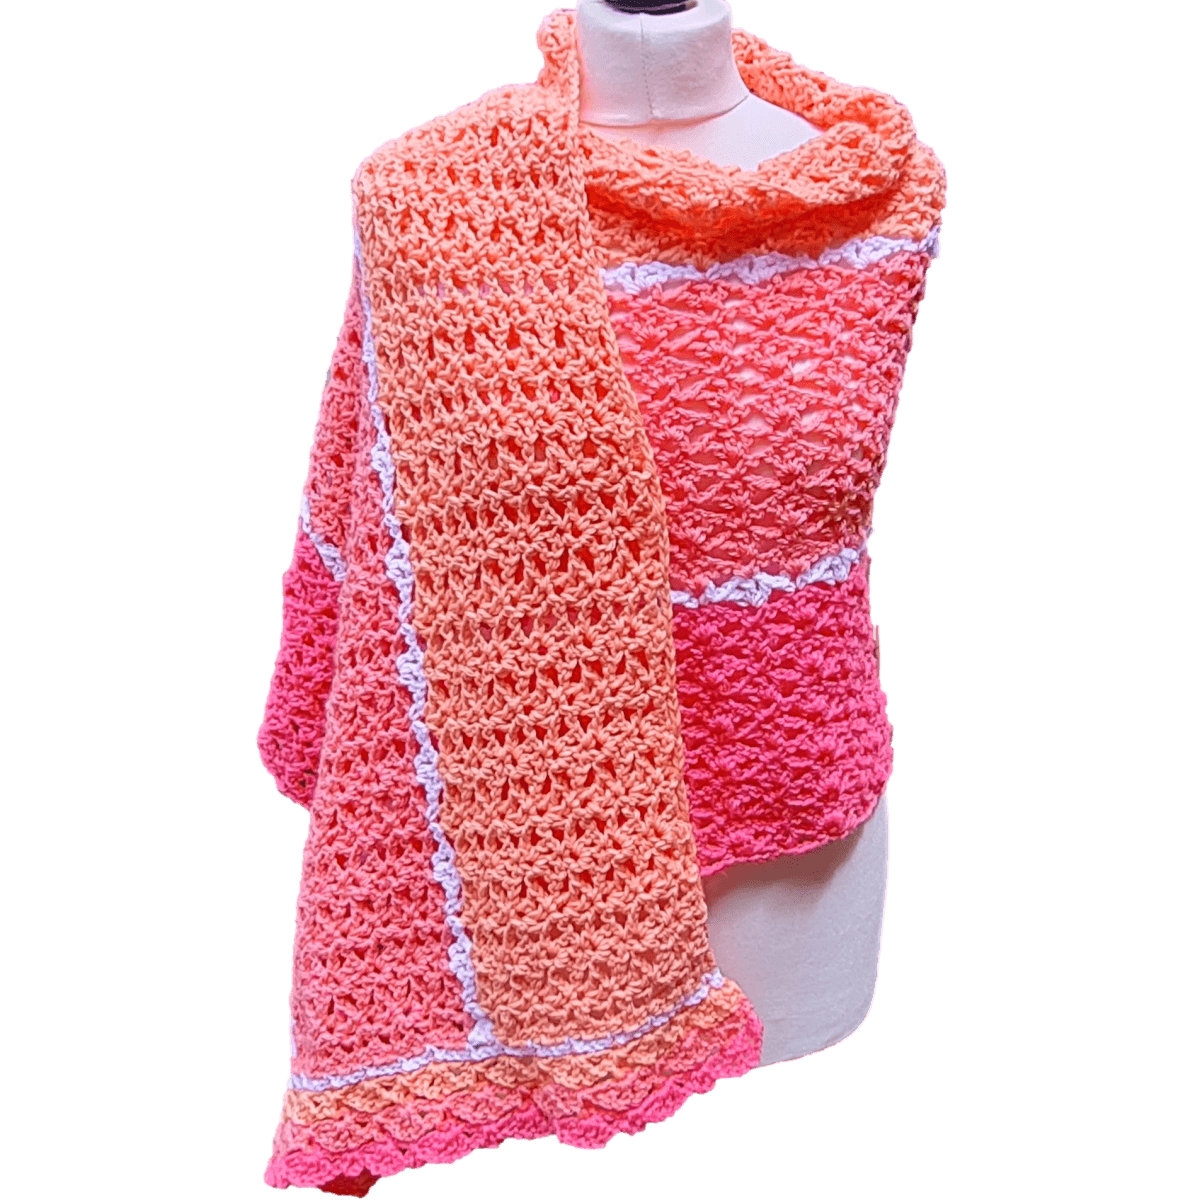 Sundae Granny Crochet Shawl - Easy to Follow Written Crochet Pattern - The Secret Yarnery